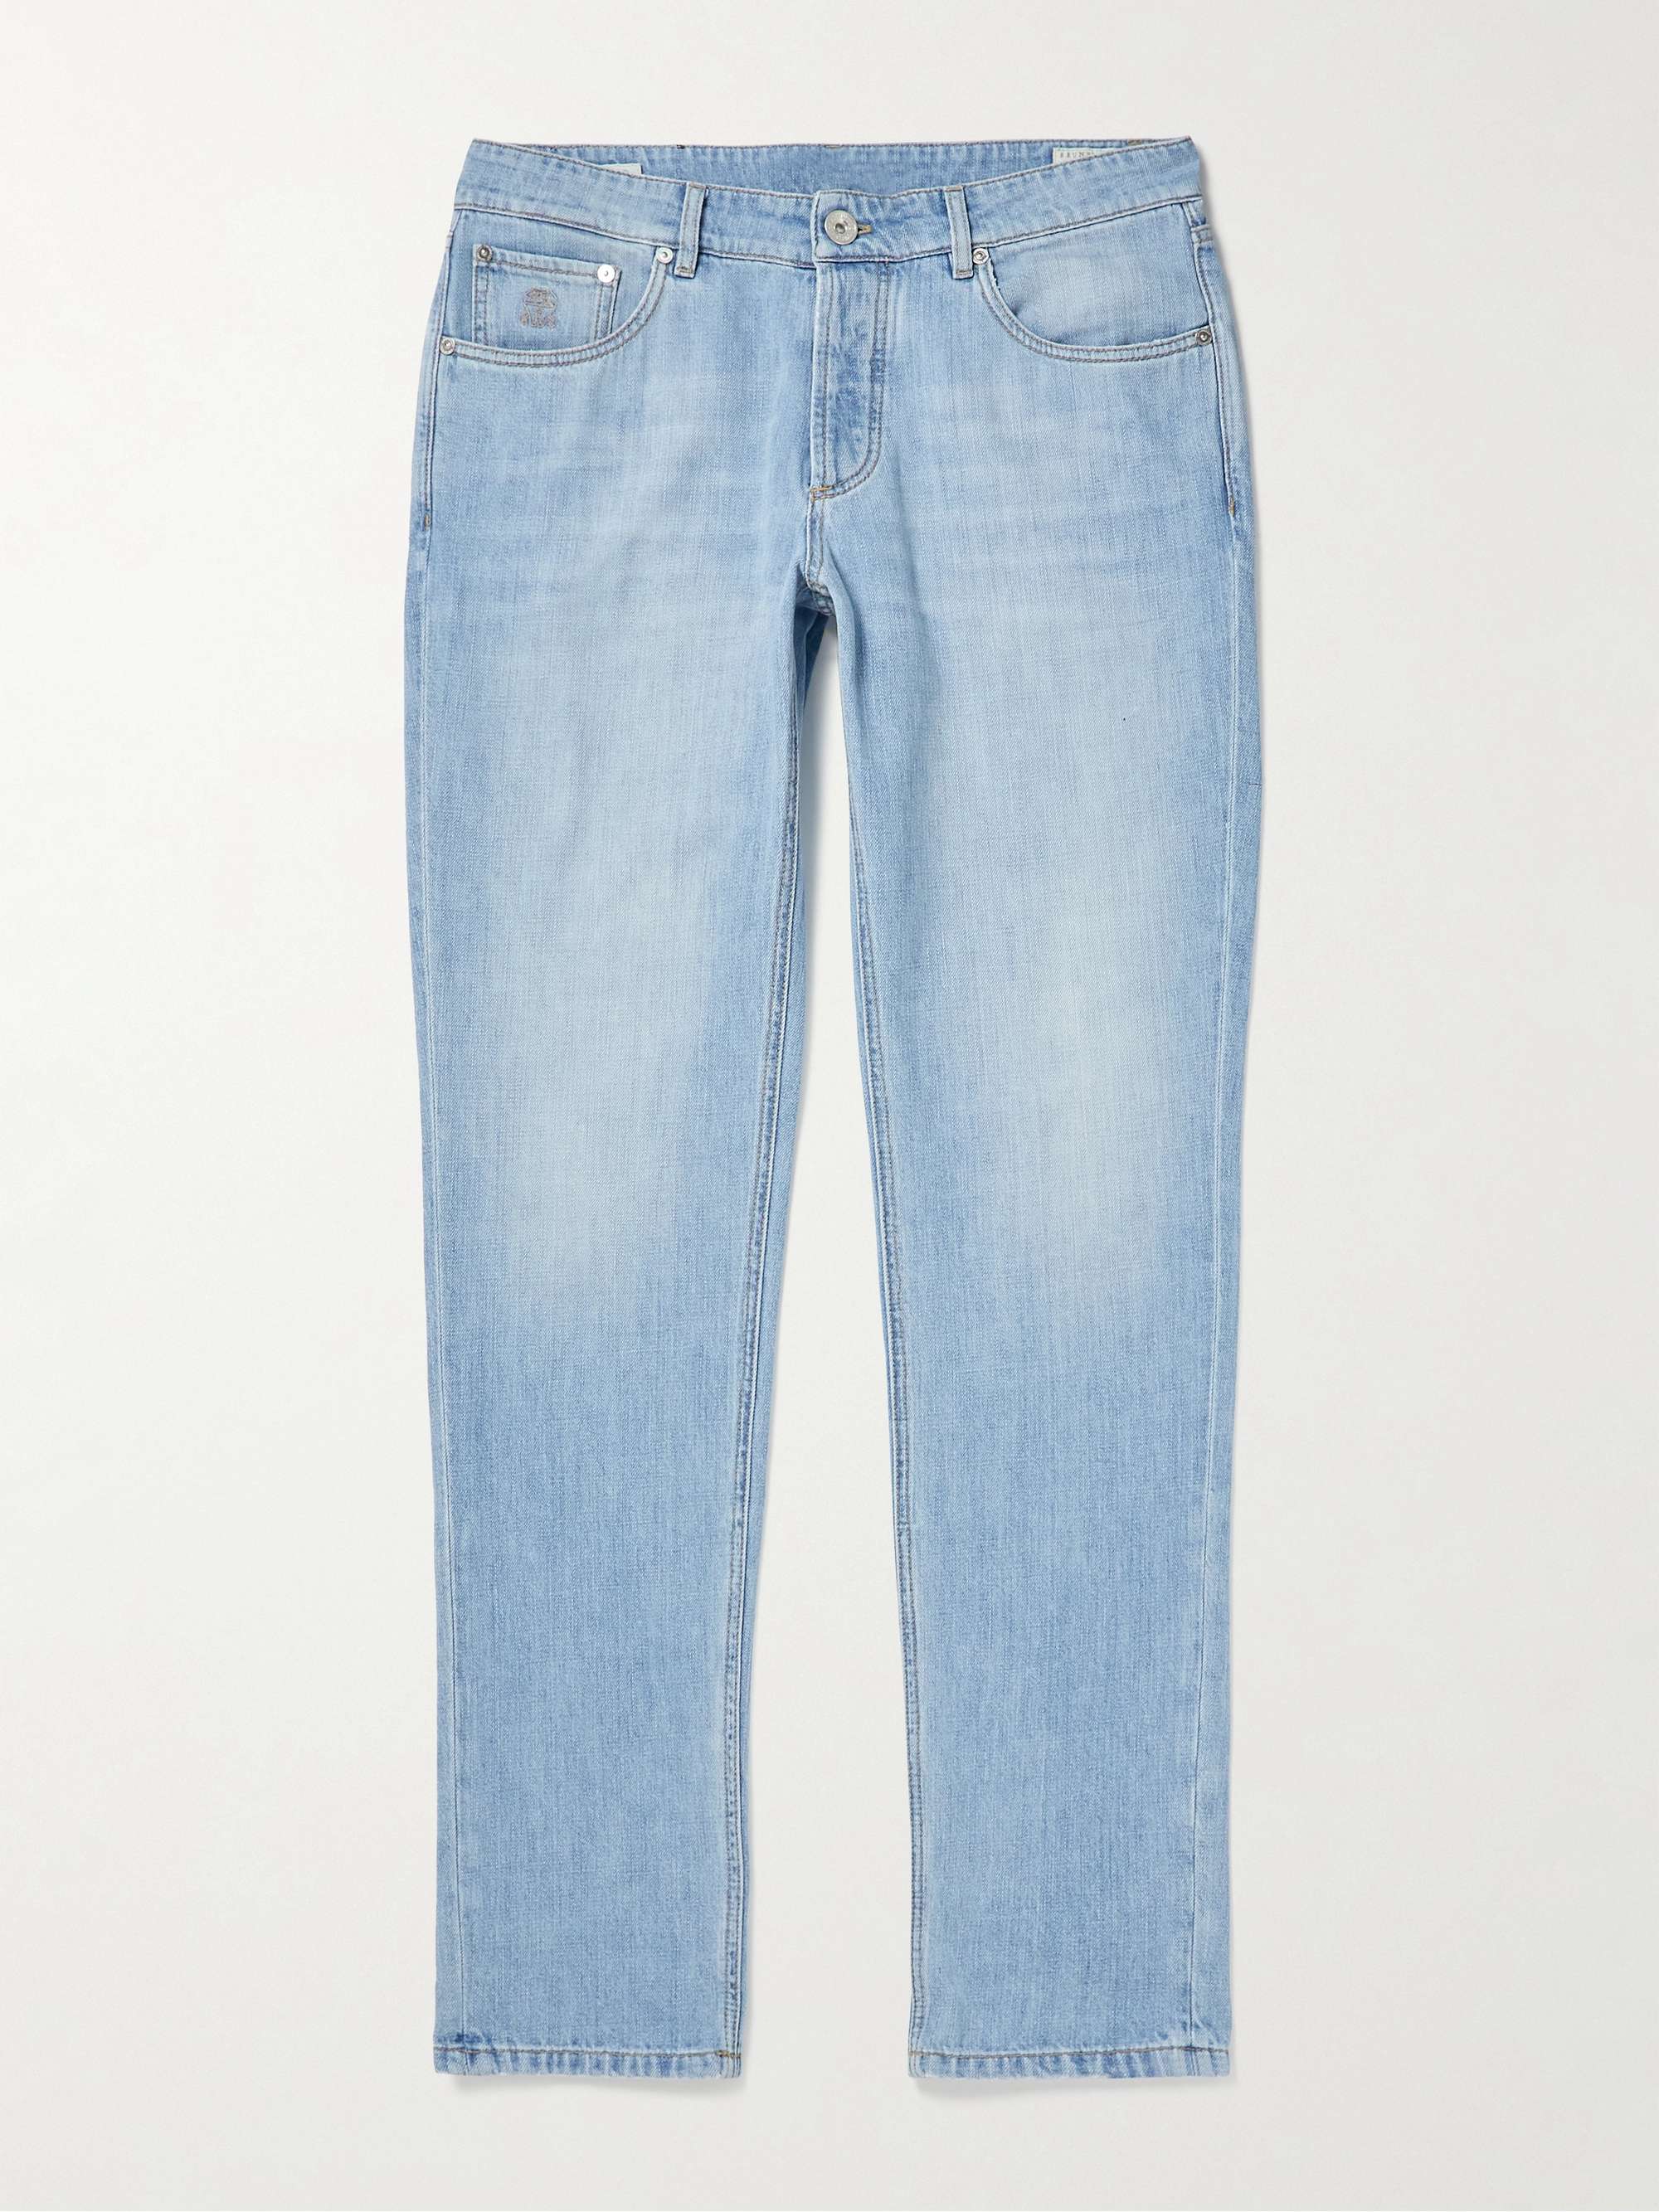 BRUNELLO CUCINELLI Slim-Fit Jeans | MR PORTER